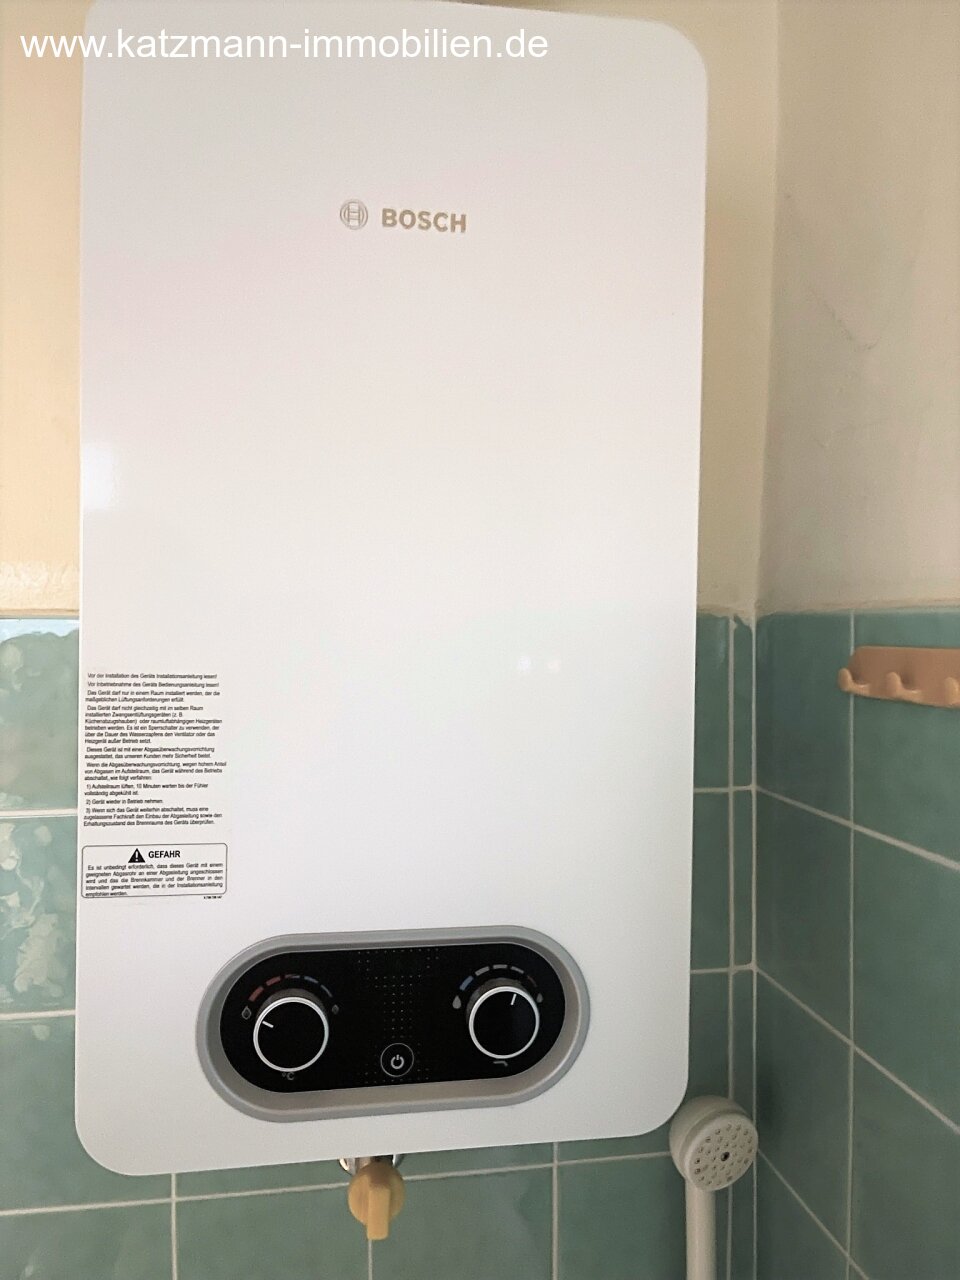 Bosch Gas-Durchlauferhitzer im Bad (2021)